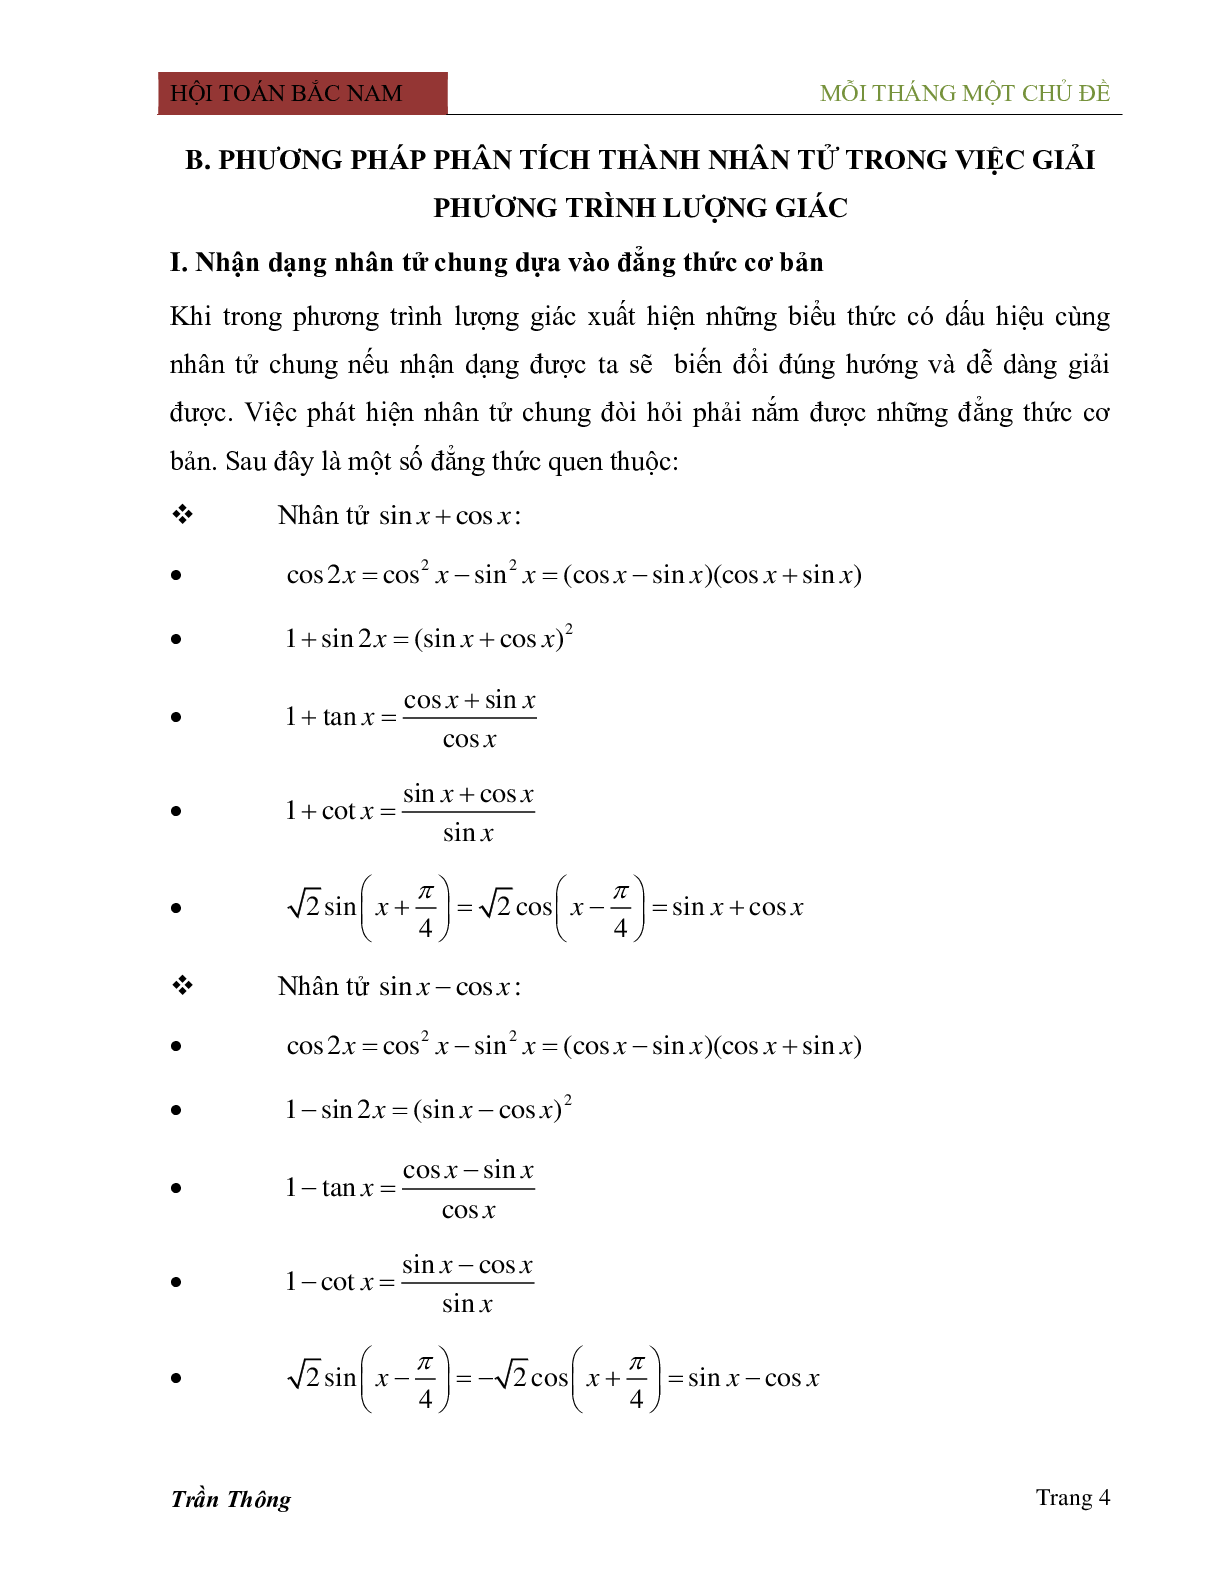 Phương pháp phân tích thành nhân tử trong việc giải phương trình lượng giác (trang 4)